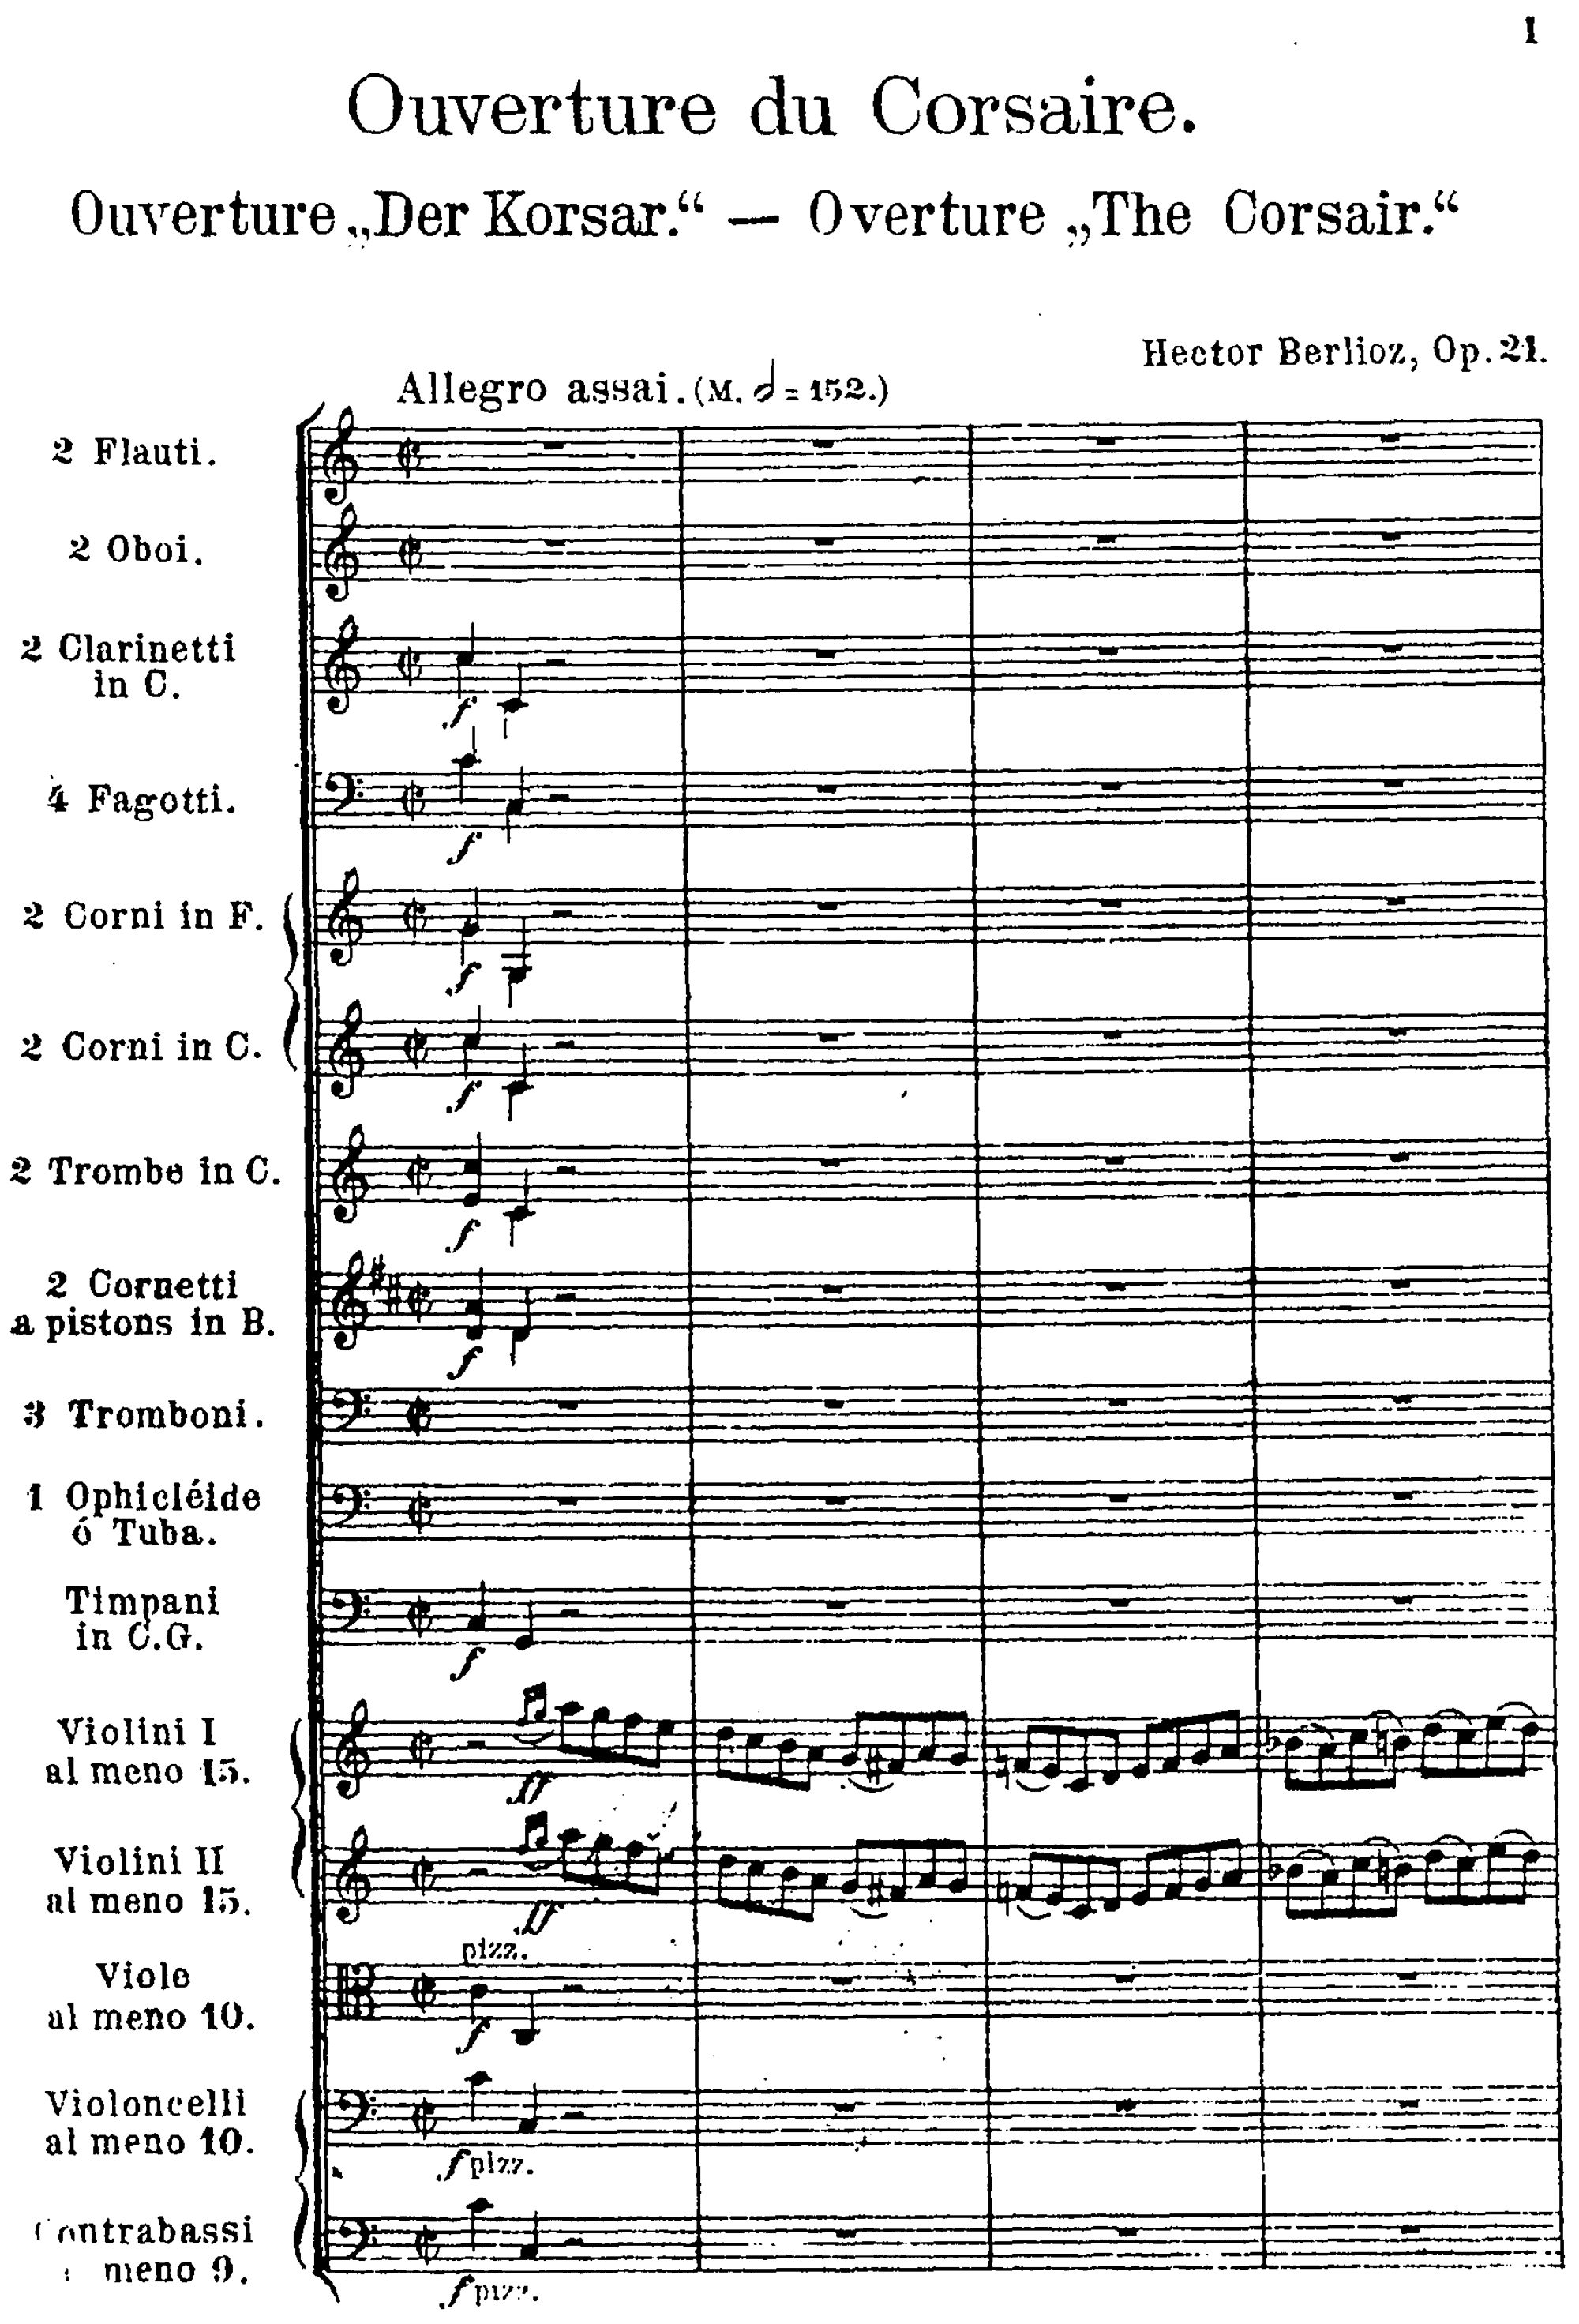 1ère page de la partition du Corsaire, édition de Leipzig, Ernst Eulenburg, ca.1899, Plate E.E. 3721